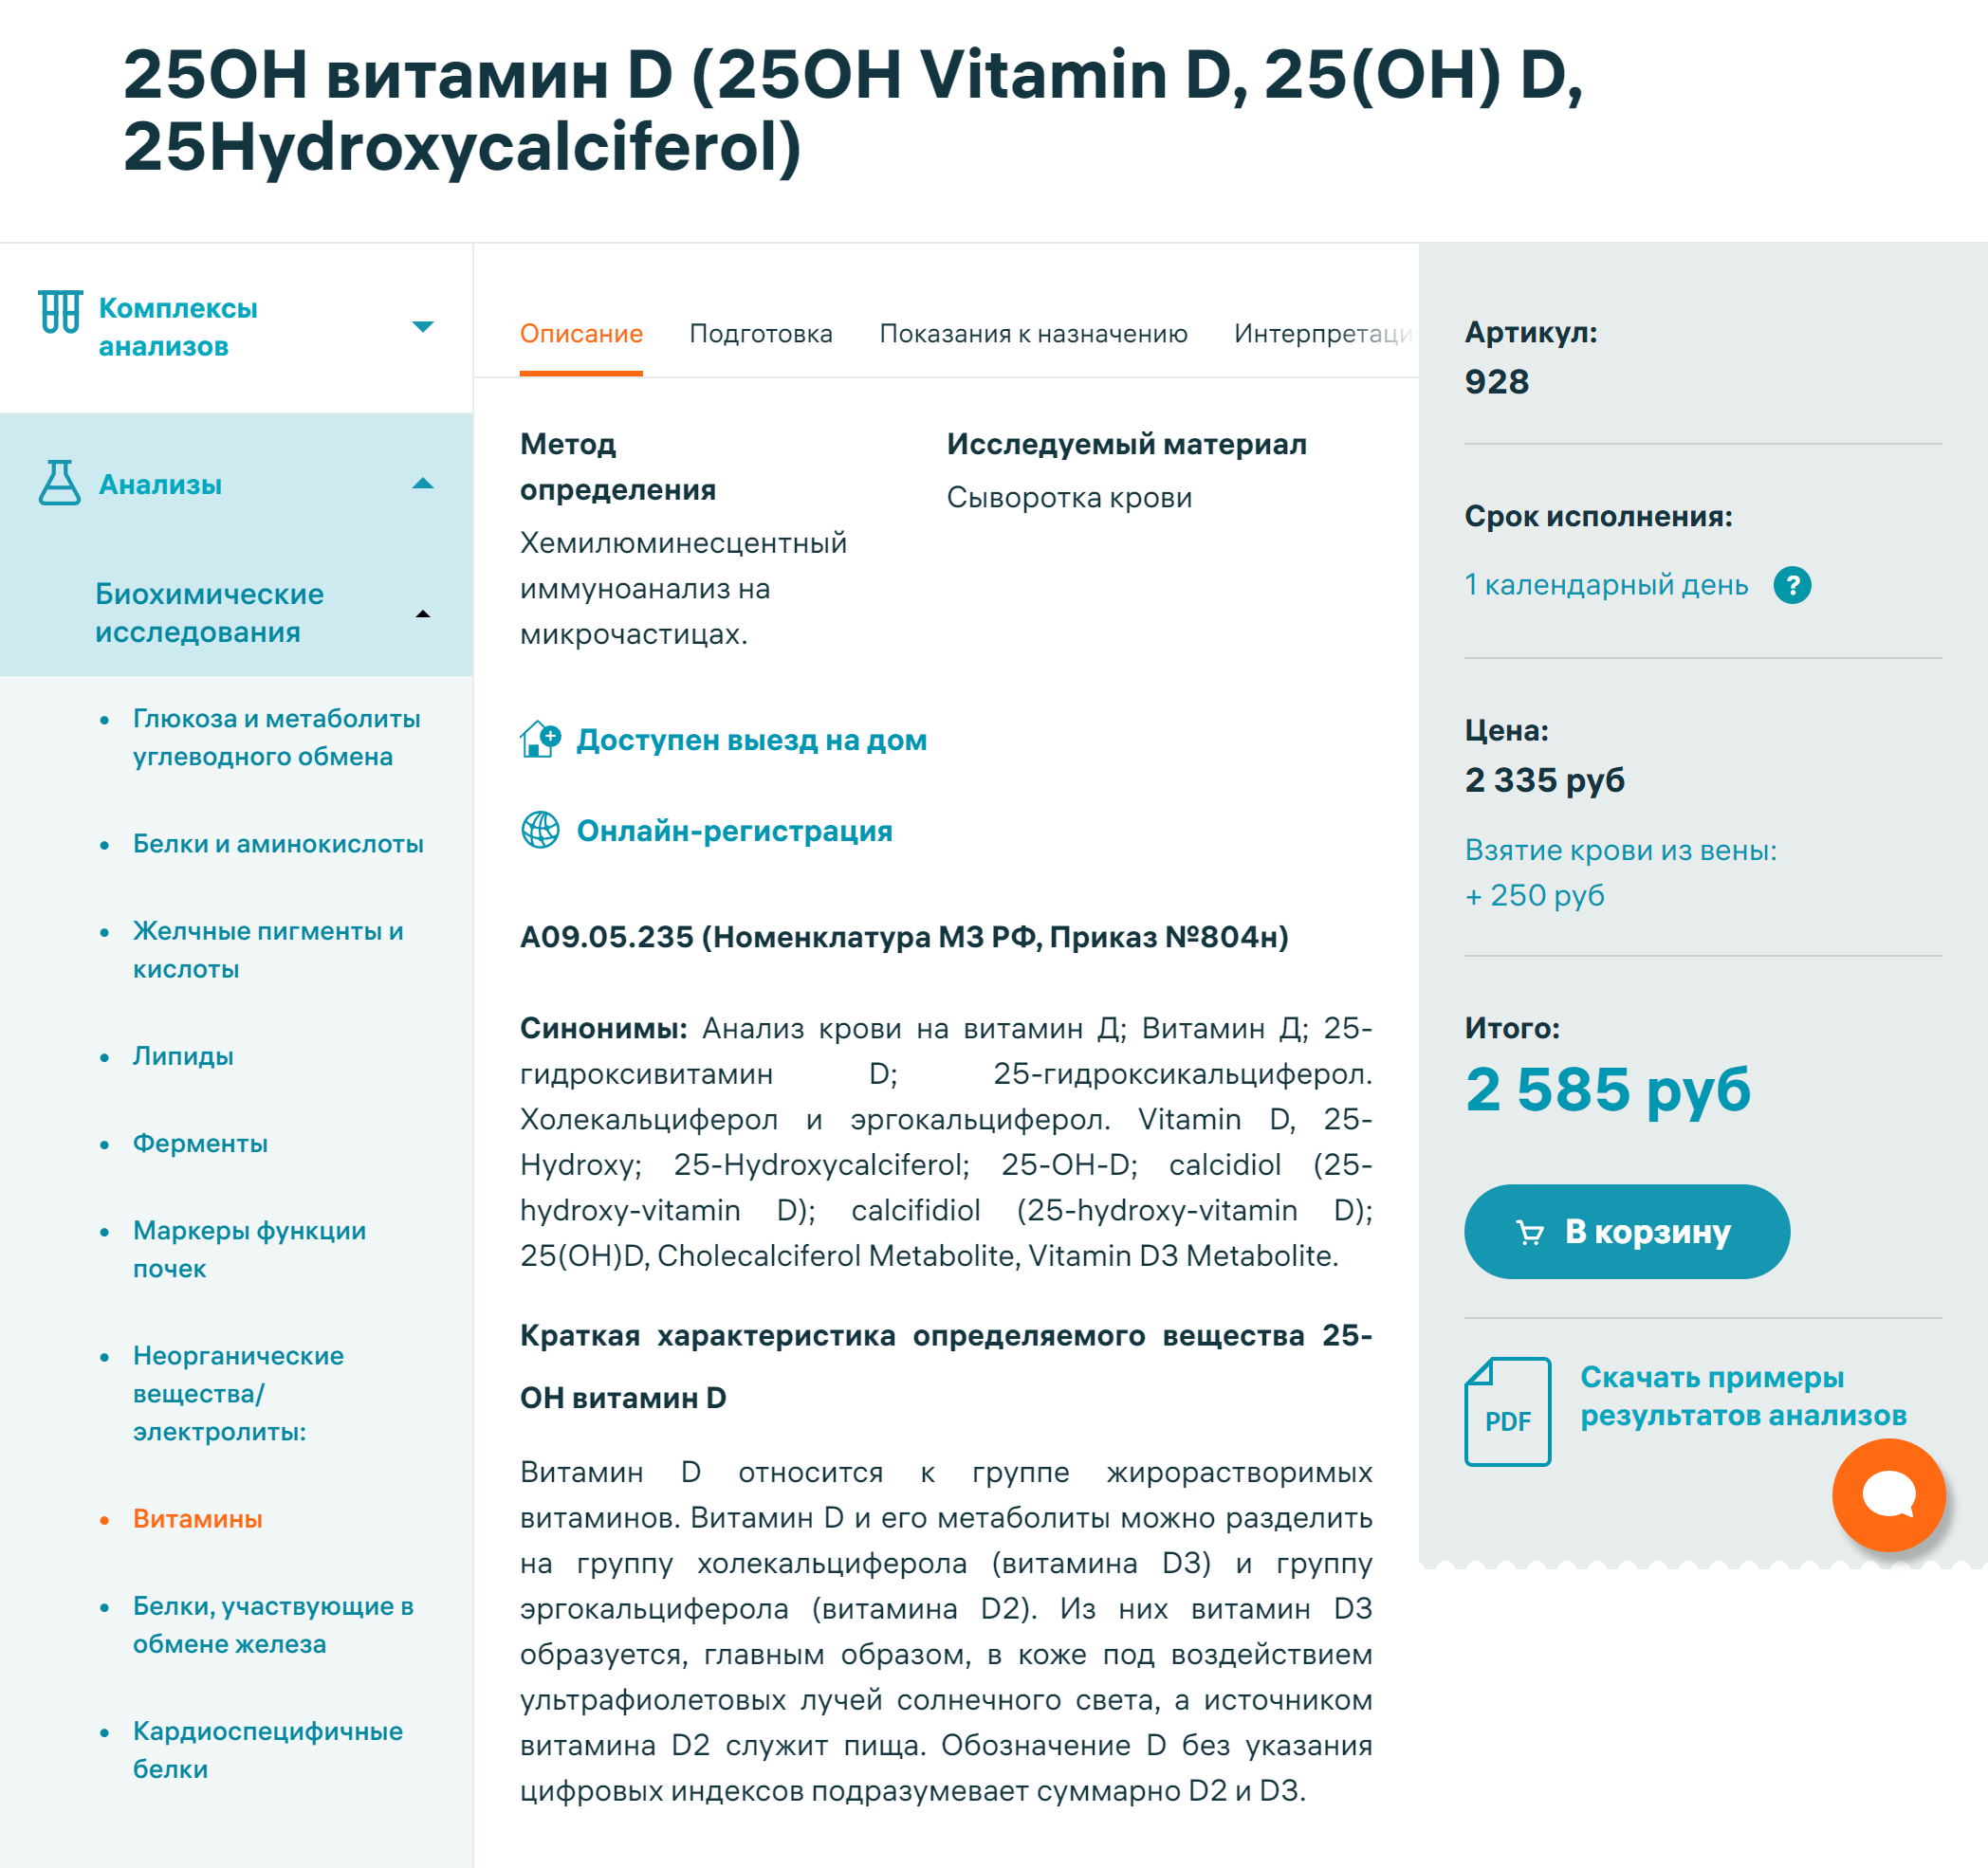 Стоимость анализа на витамин D в лабораториях Москвы — от 2500 ₽. Источник: invitro.ru